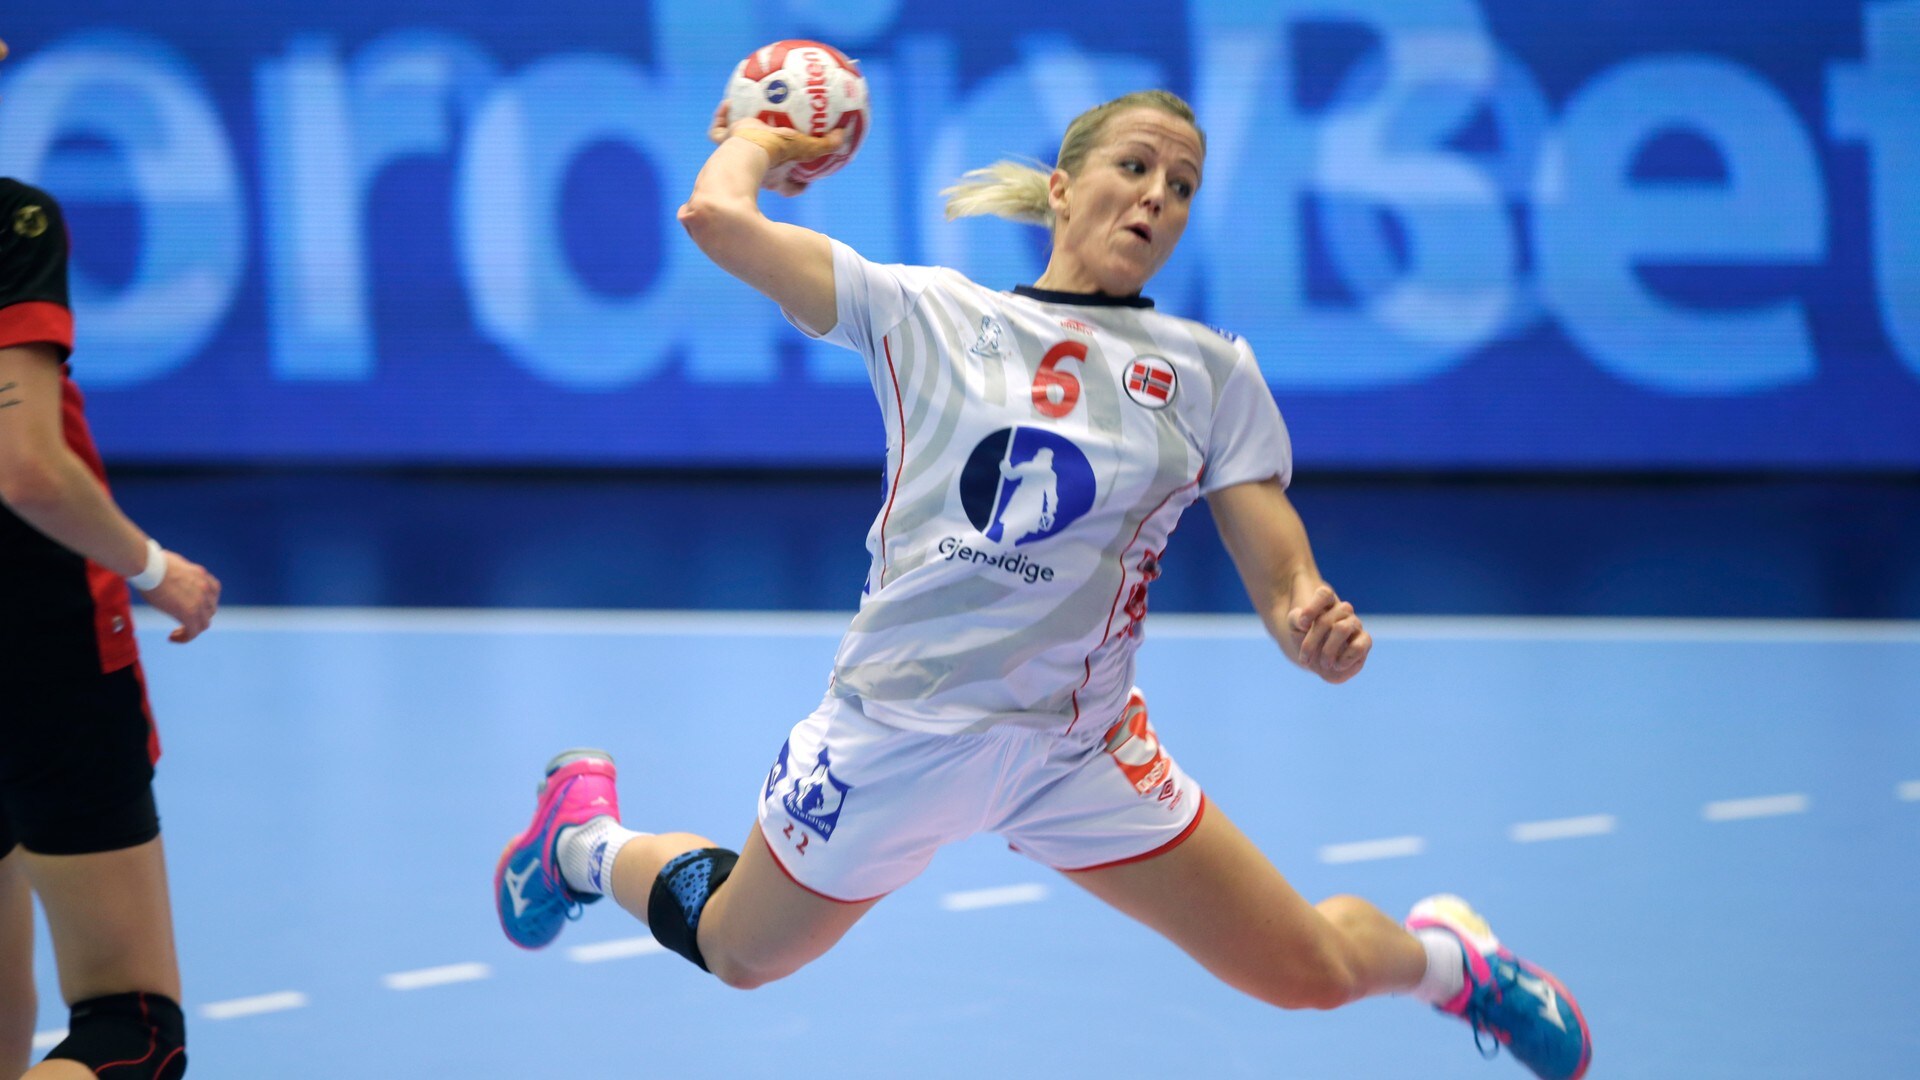 VM håndball kvinner: Norge - Romania - NRK